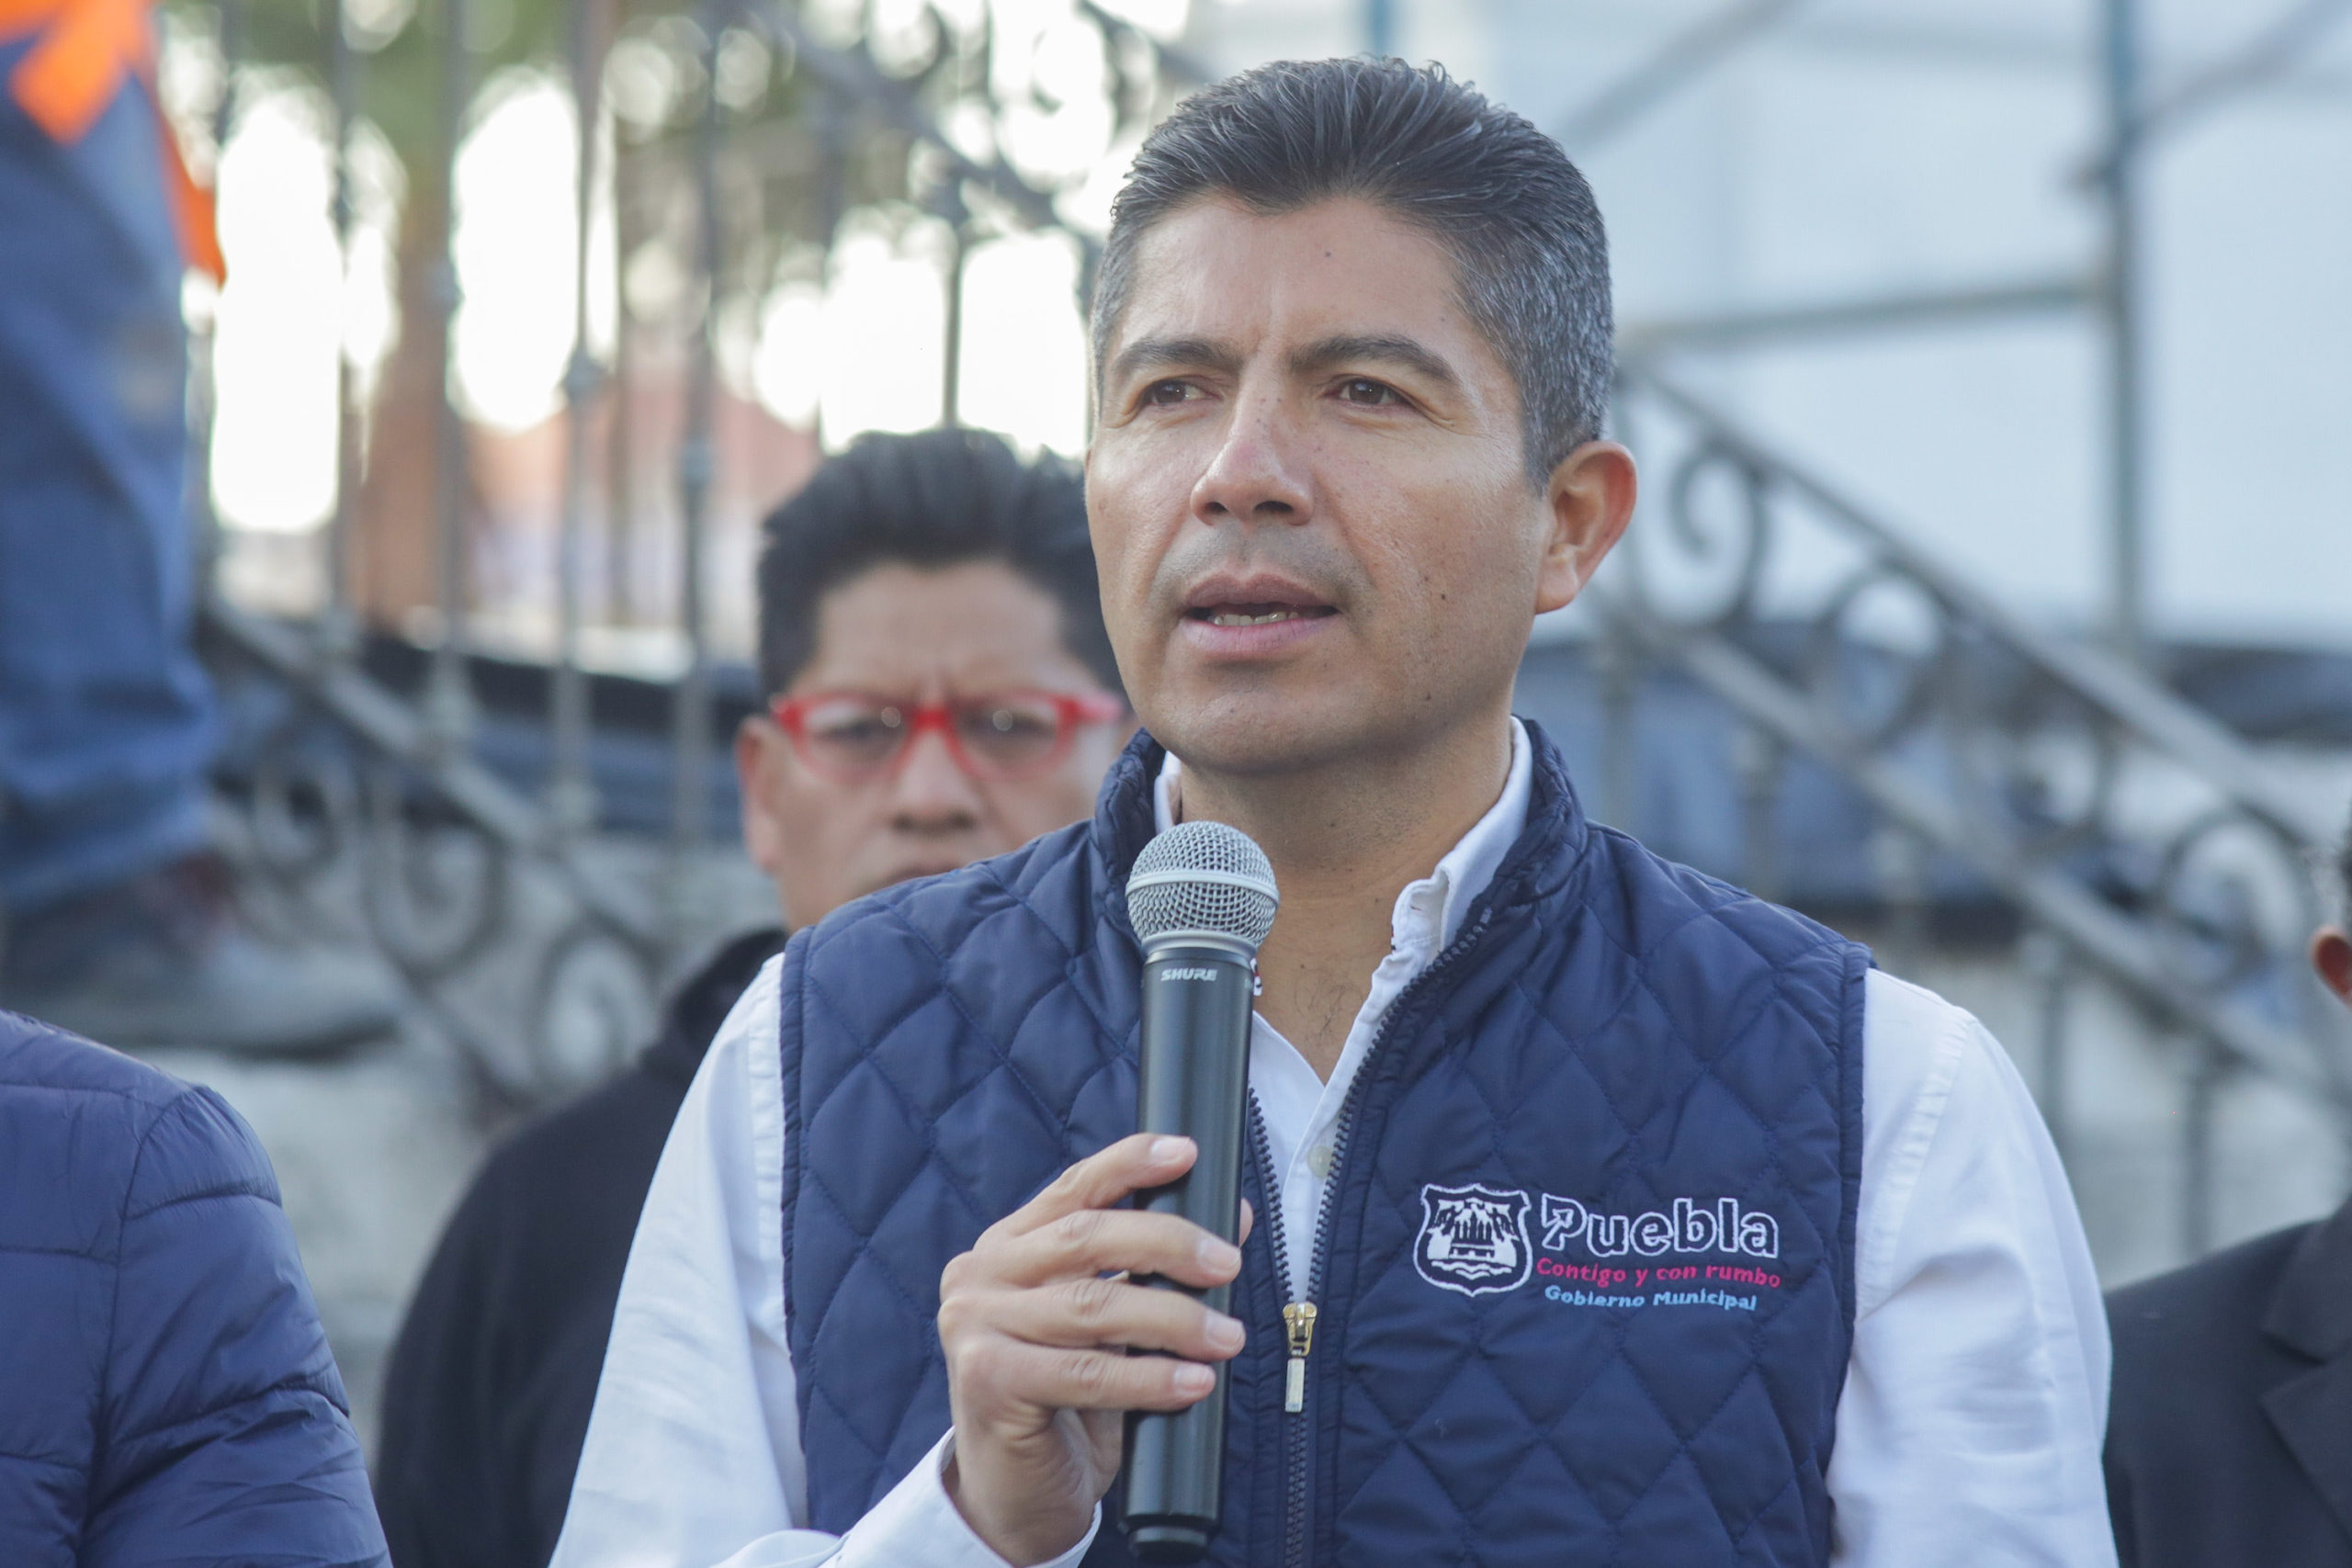 Aún soy un aspirante a la gubernatura de Puebla, más no el candidato oficial del Frente Amplio: Eduardo Rivera